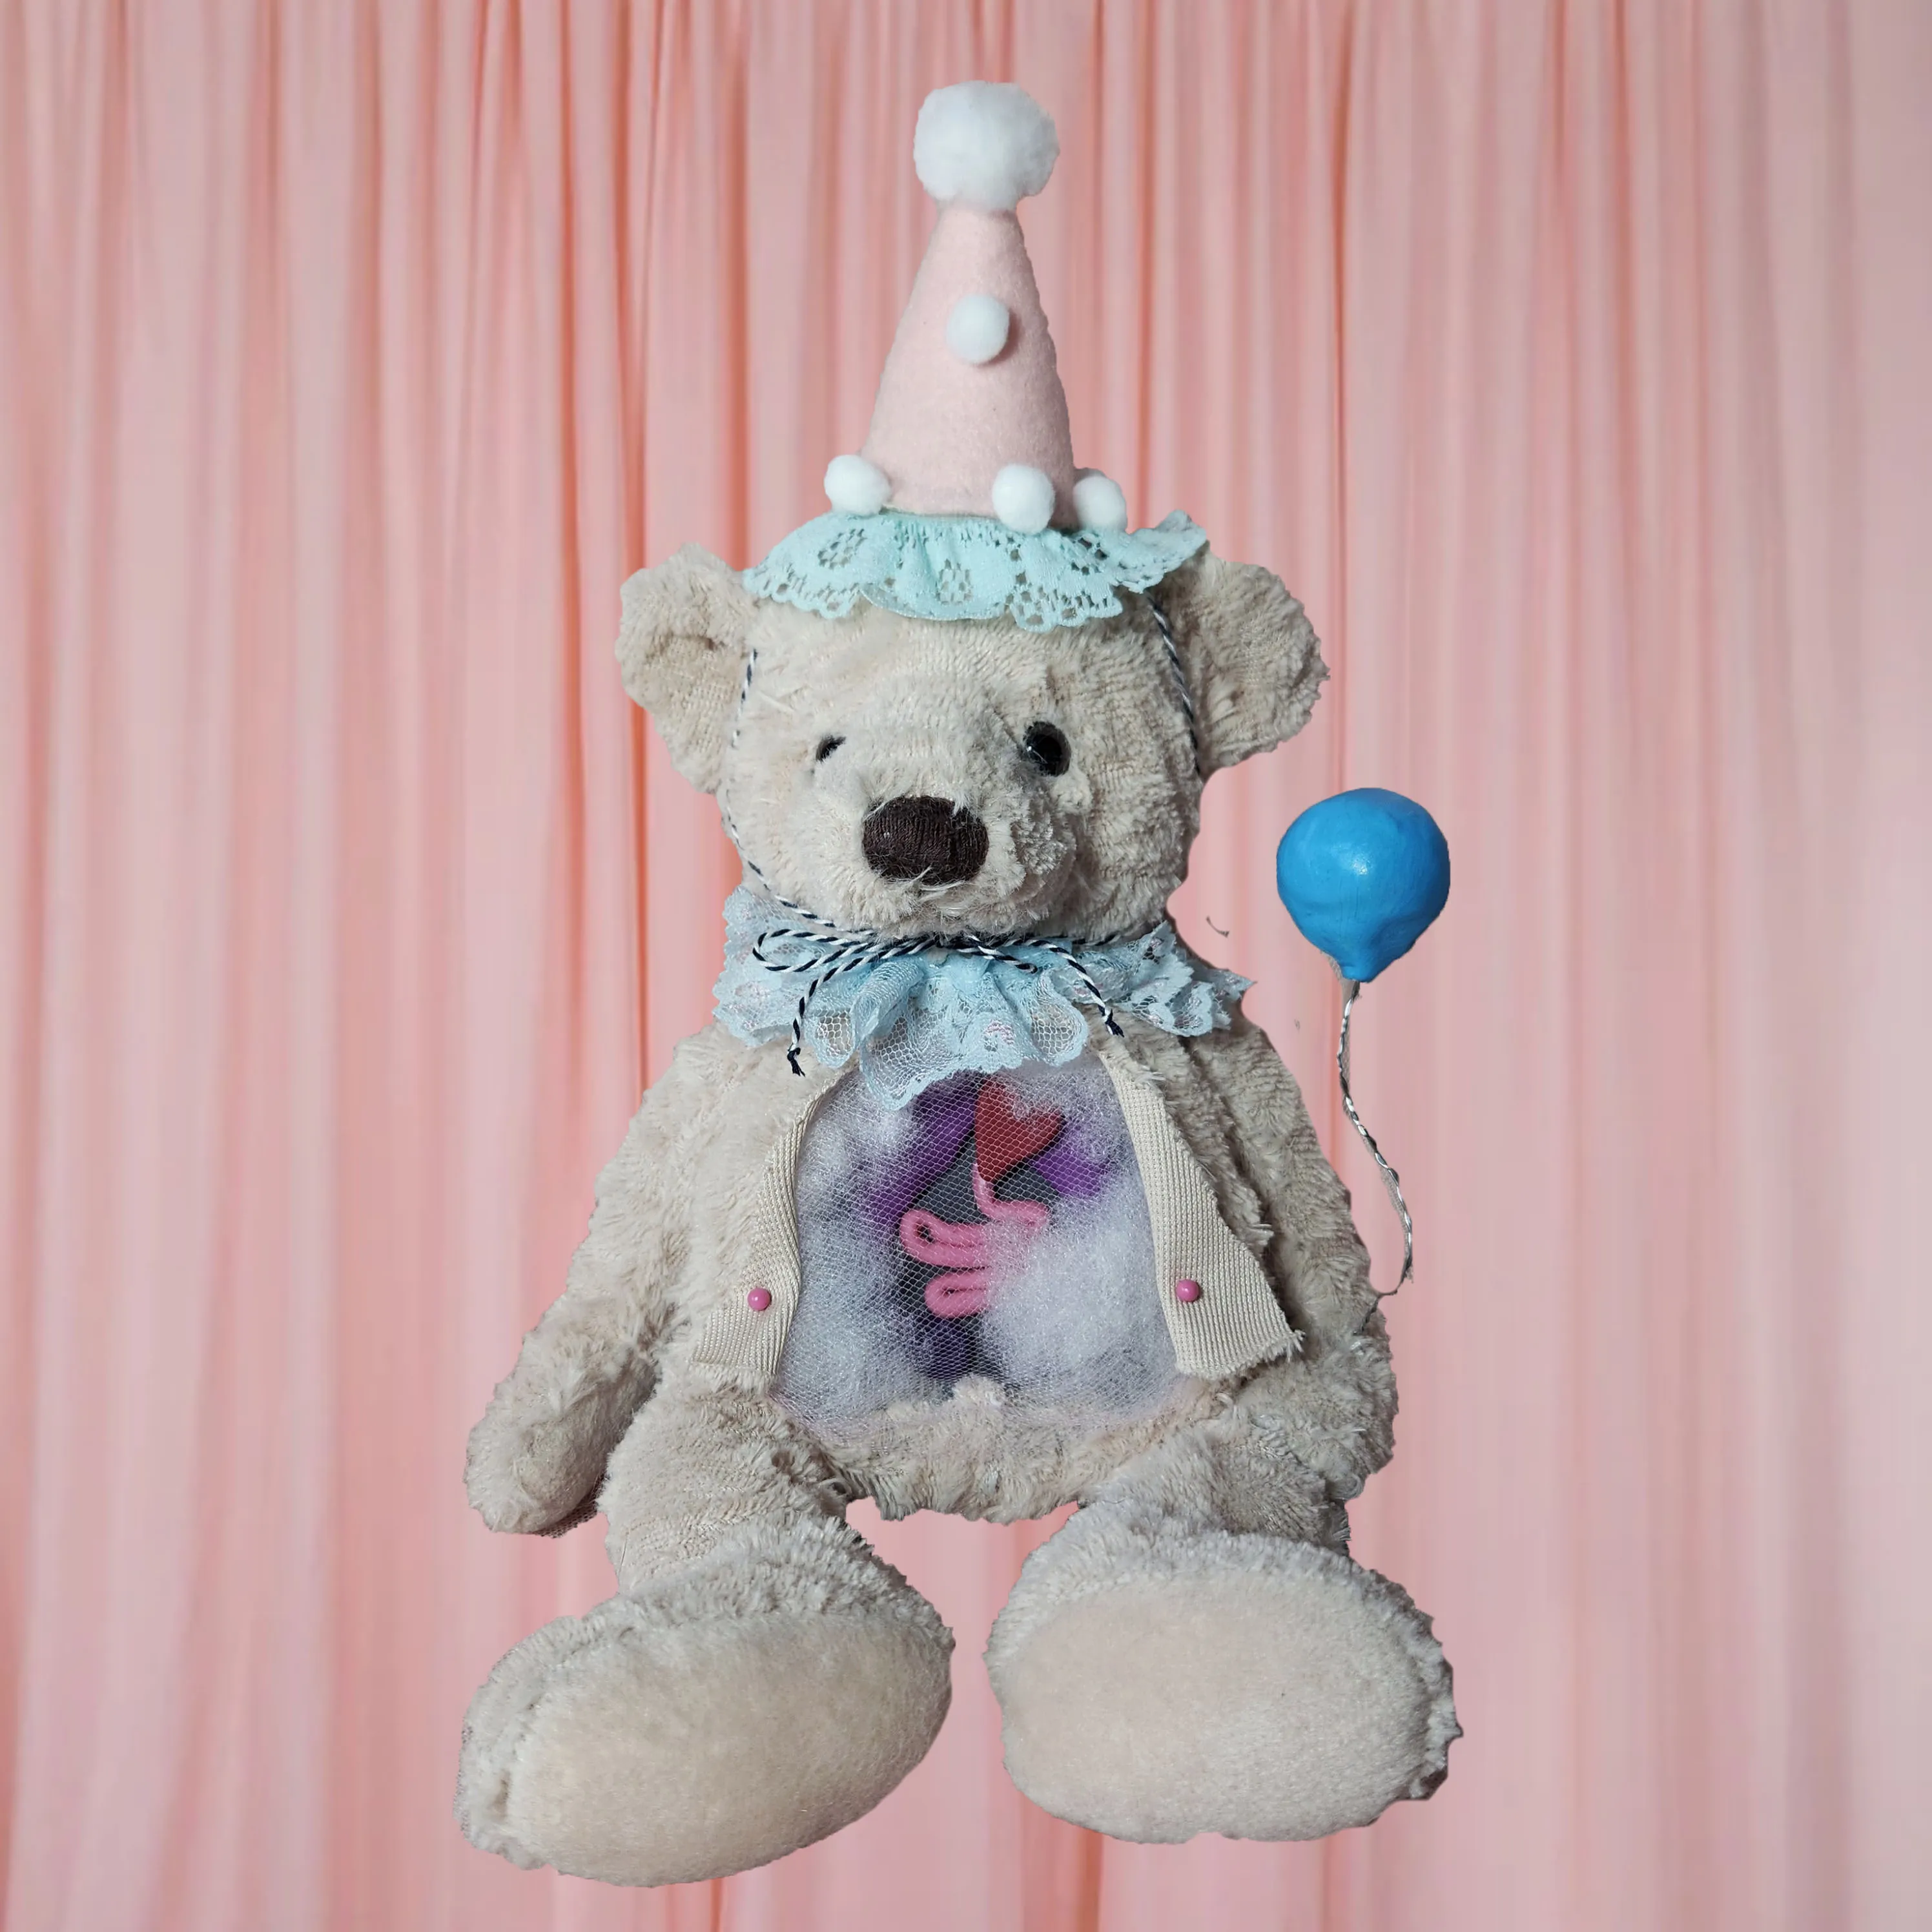 Teddy's Birthday